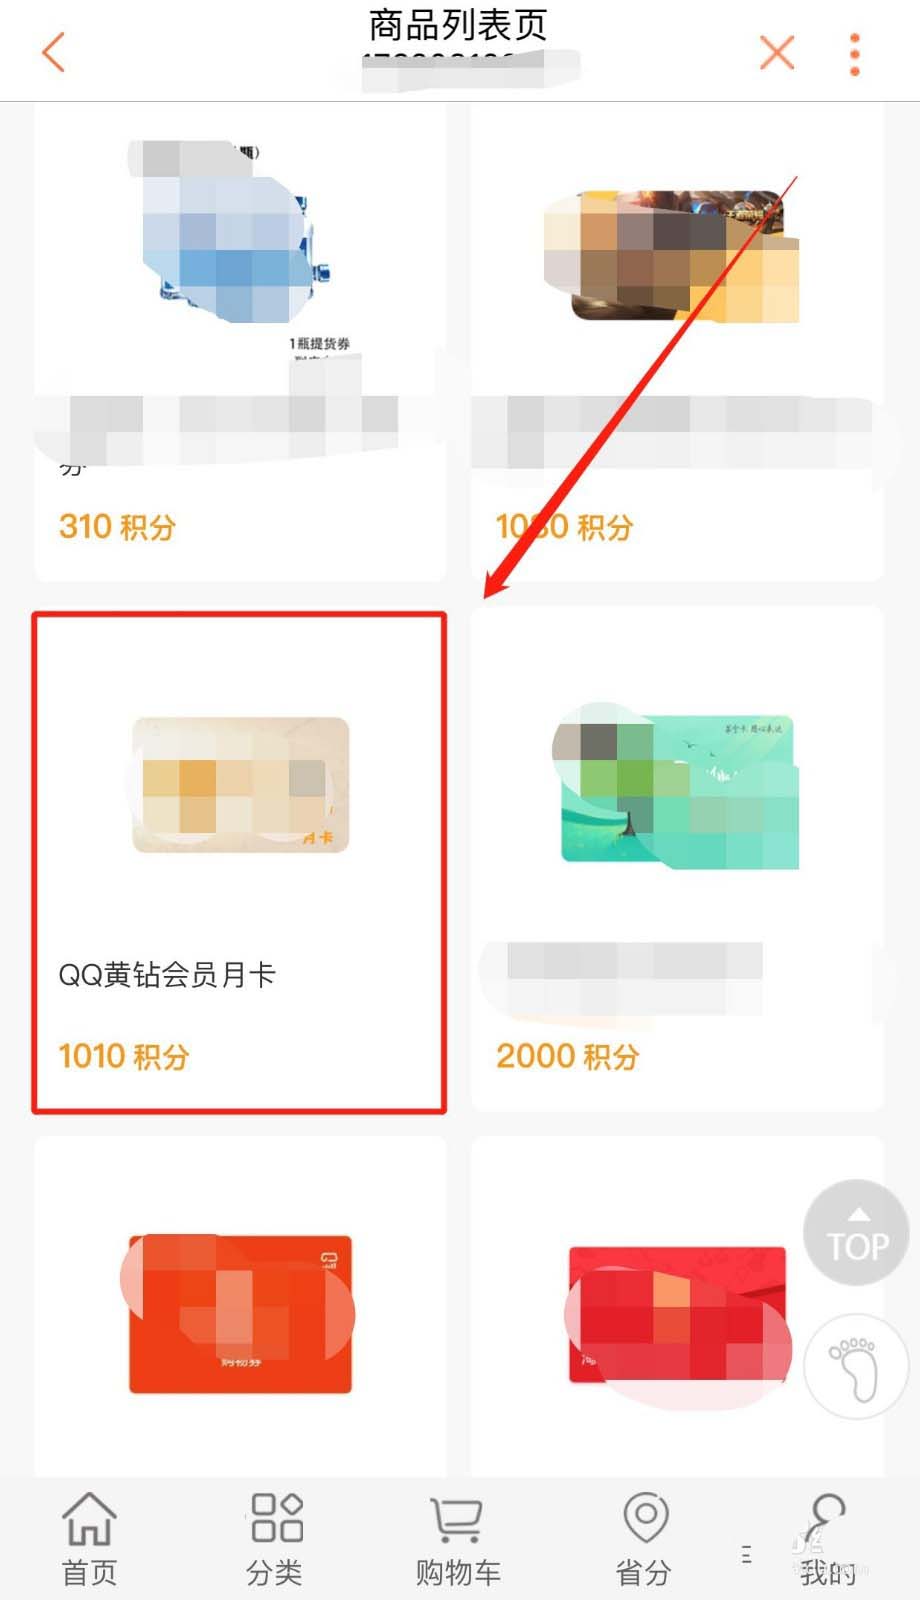 联通手机营业厅积分怎么免费兑换QQ黄钻会员月卡?